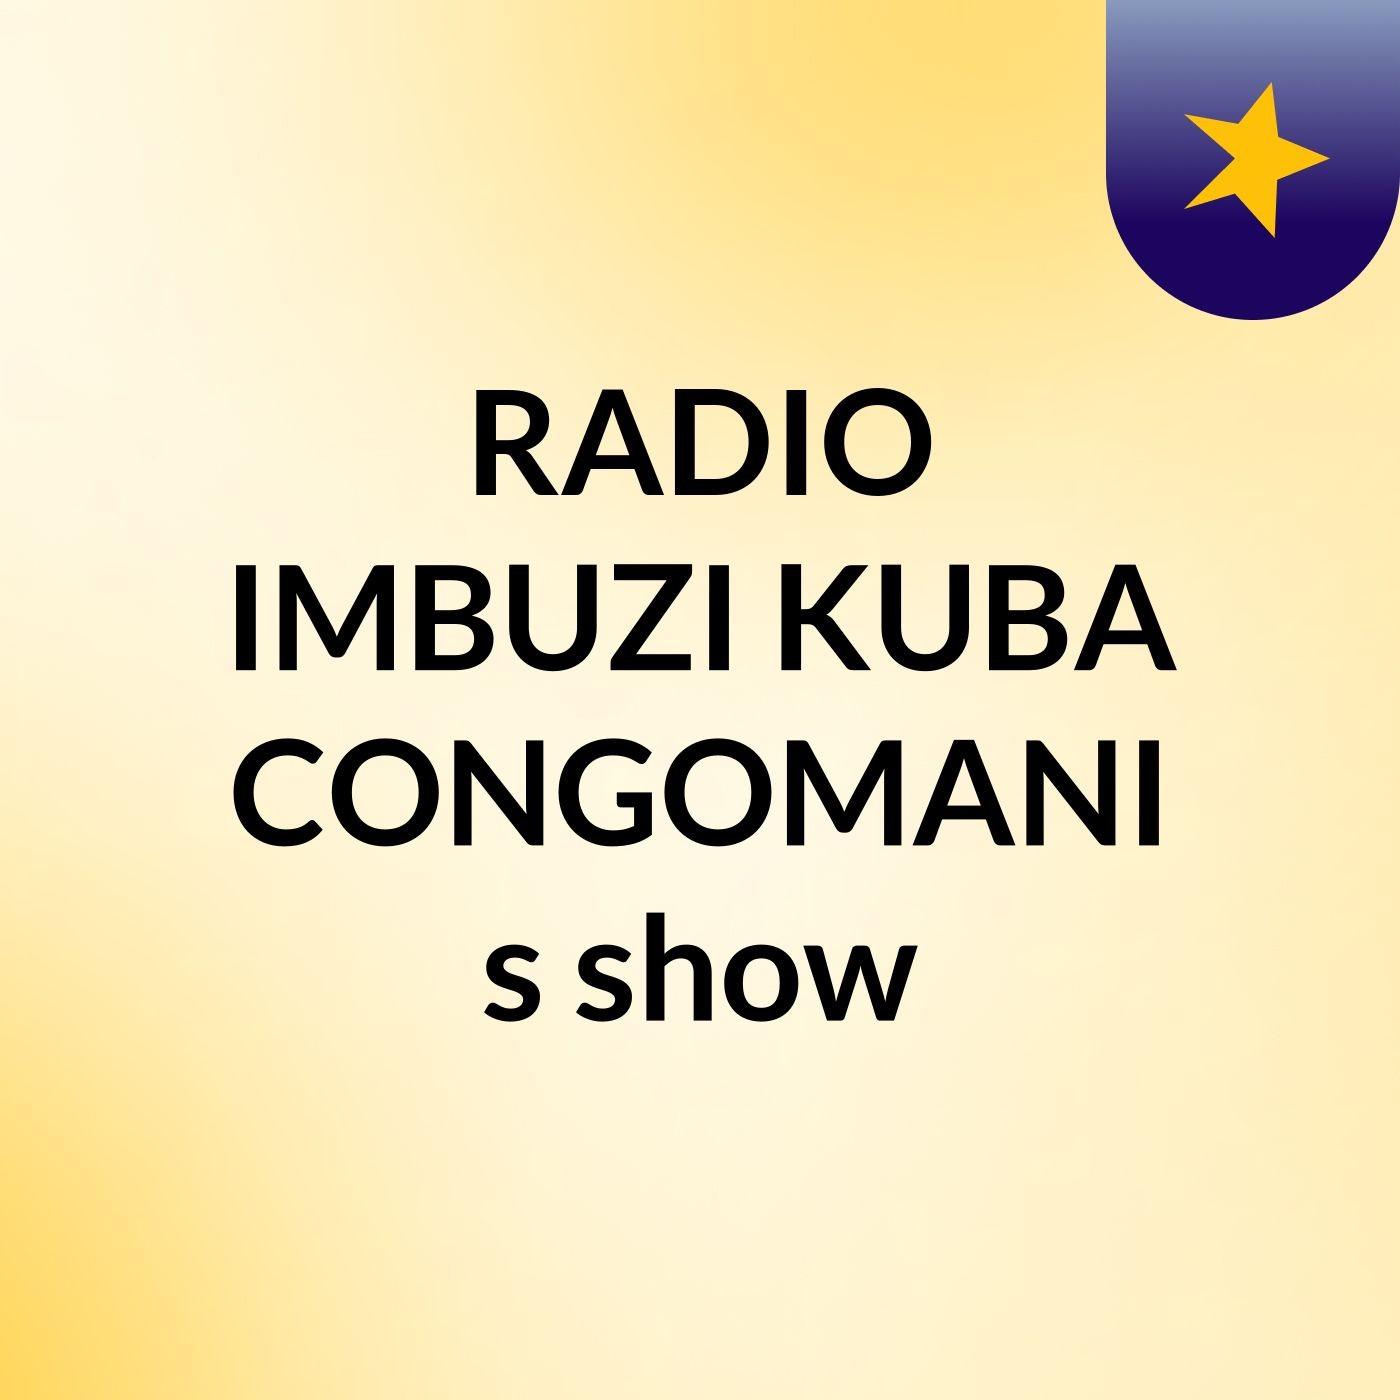 Episode 8 - RADIO IMBUZI KUBA CONGOMANI's show